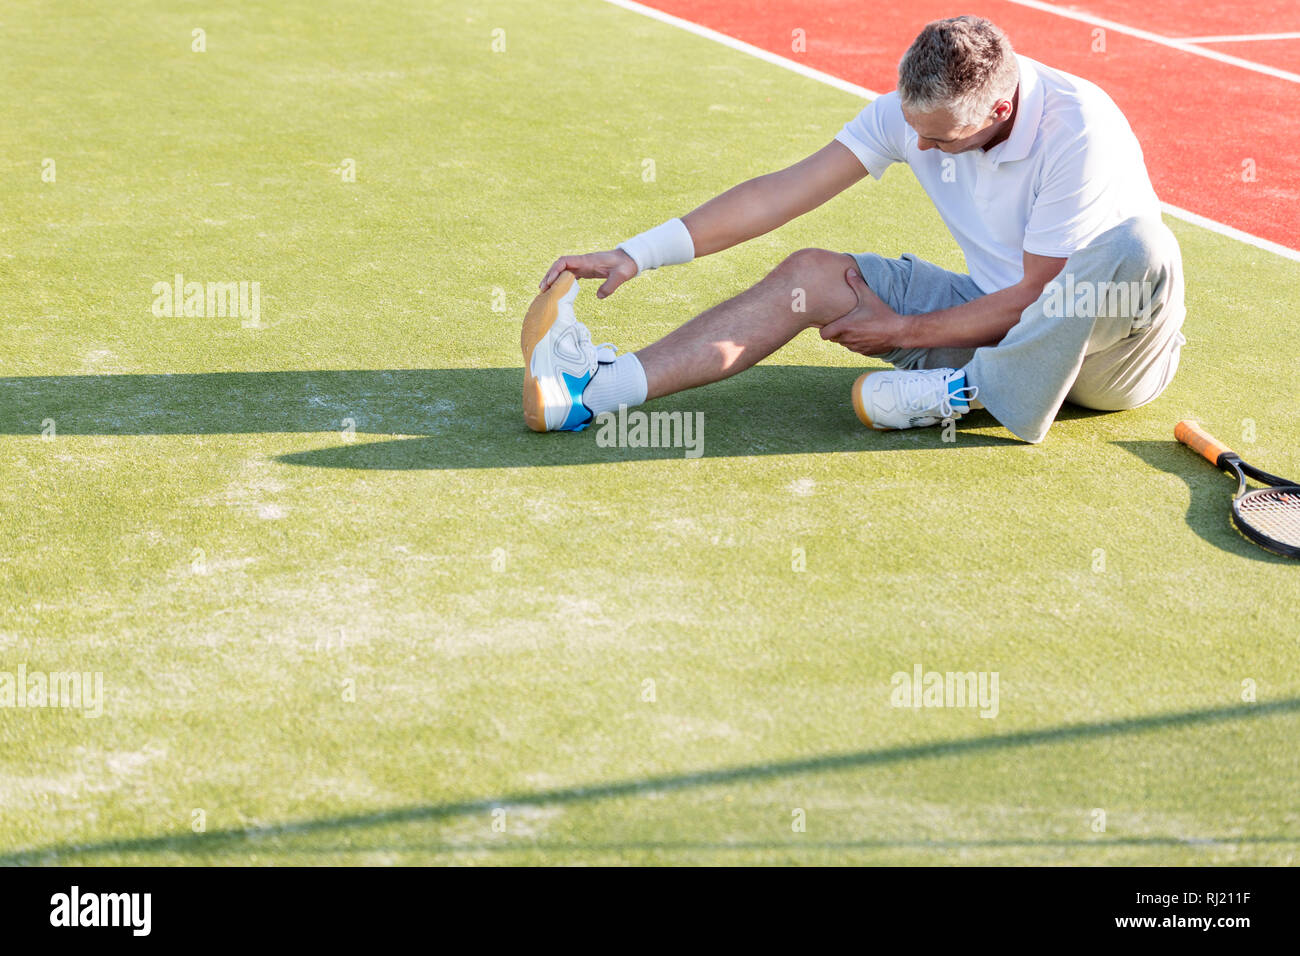 High angle view of mature man réchauffe tout en s'étendant sur un court de tennis Banque D'Images